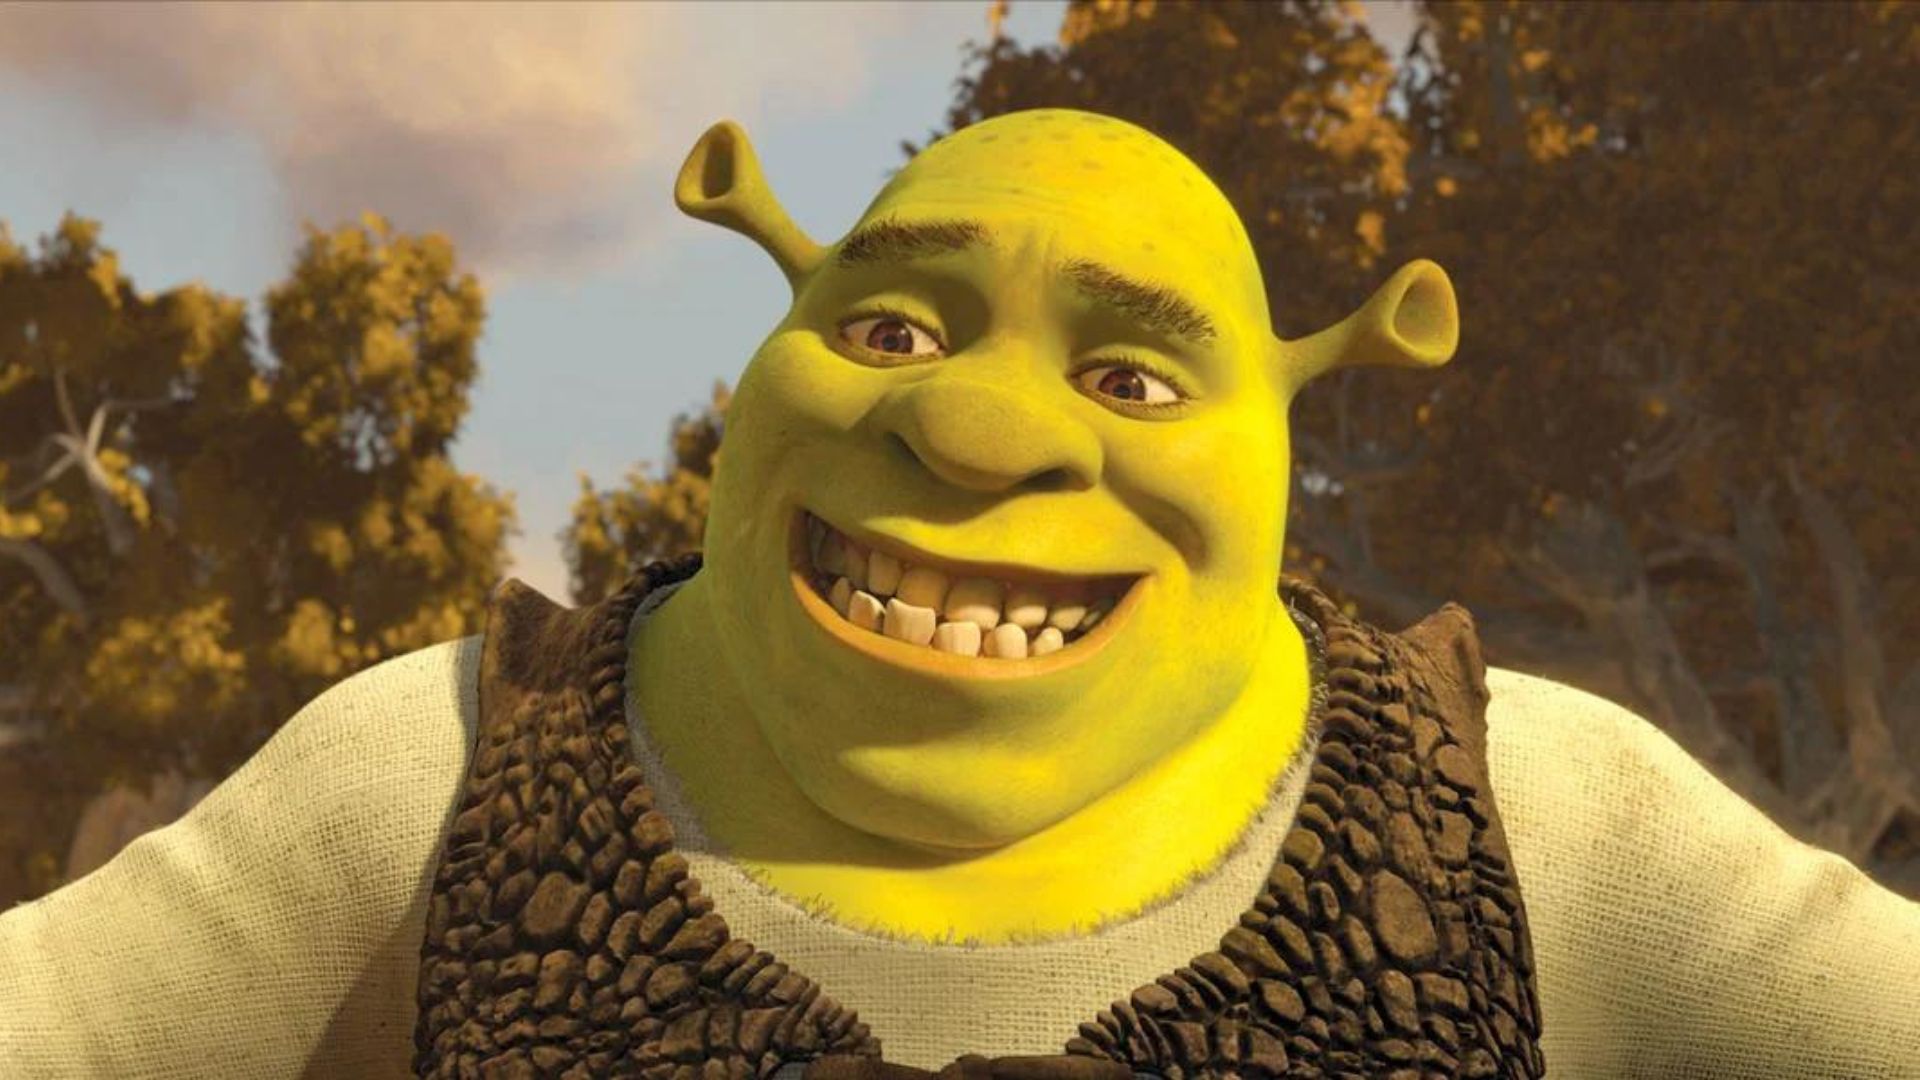 Image extraite du film "Shrek 5"